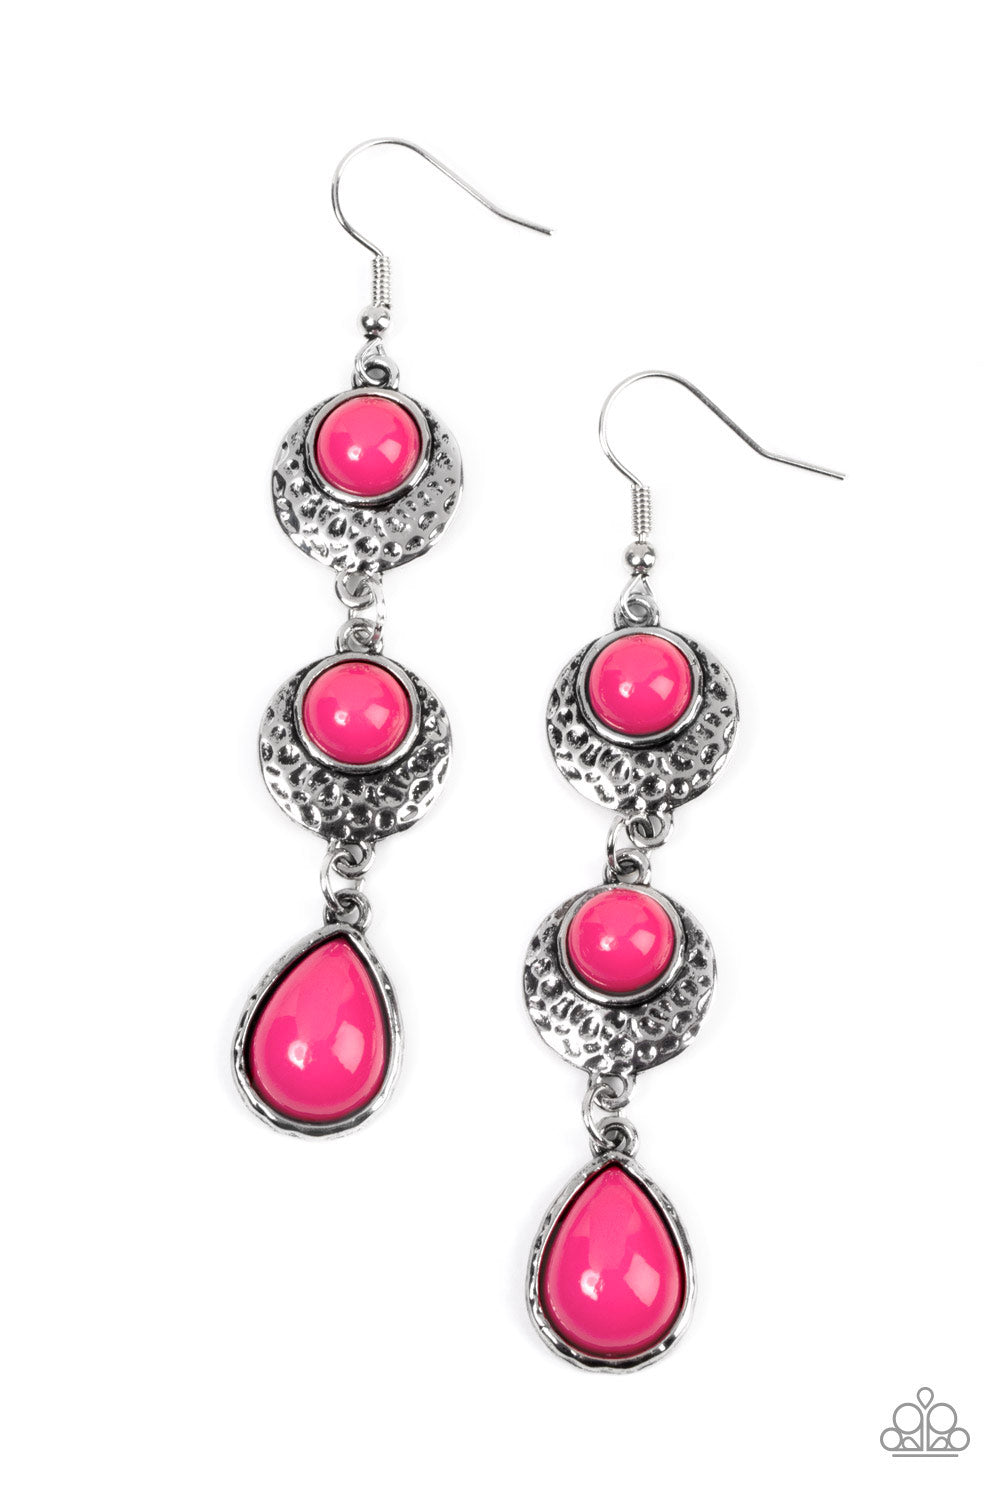 Taz Earrings (Hot Pink) - Accessories-Jewellery : Just Looking - Elk Core